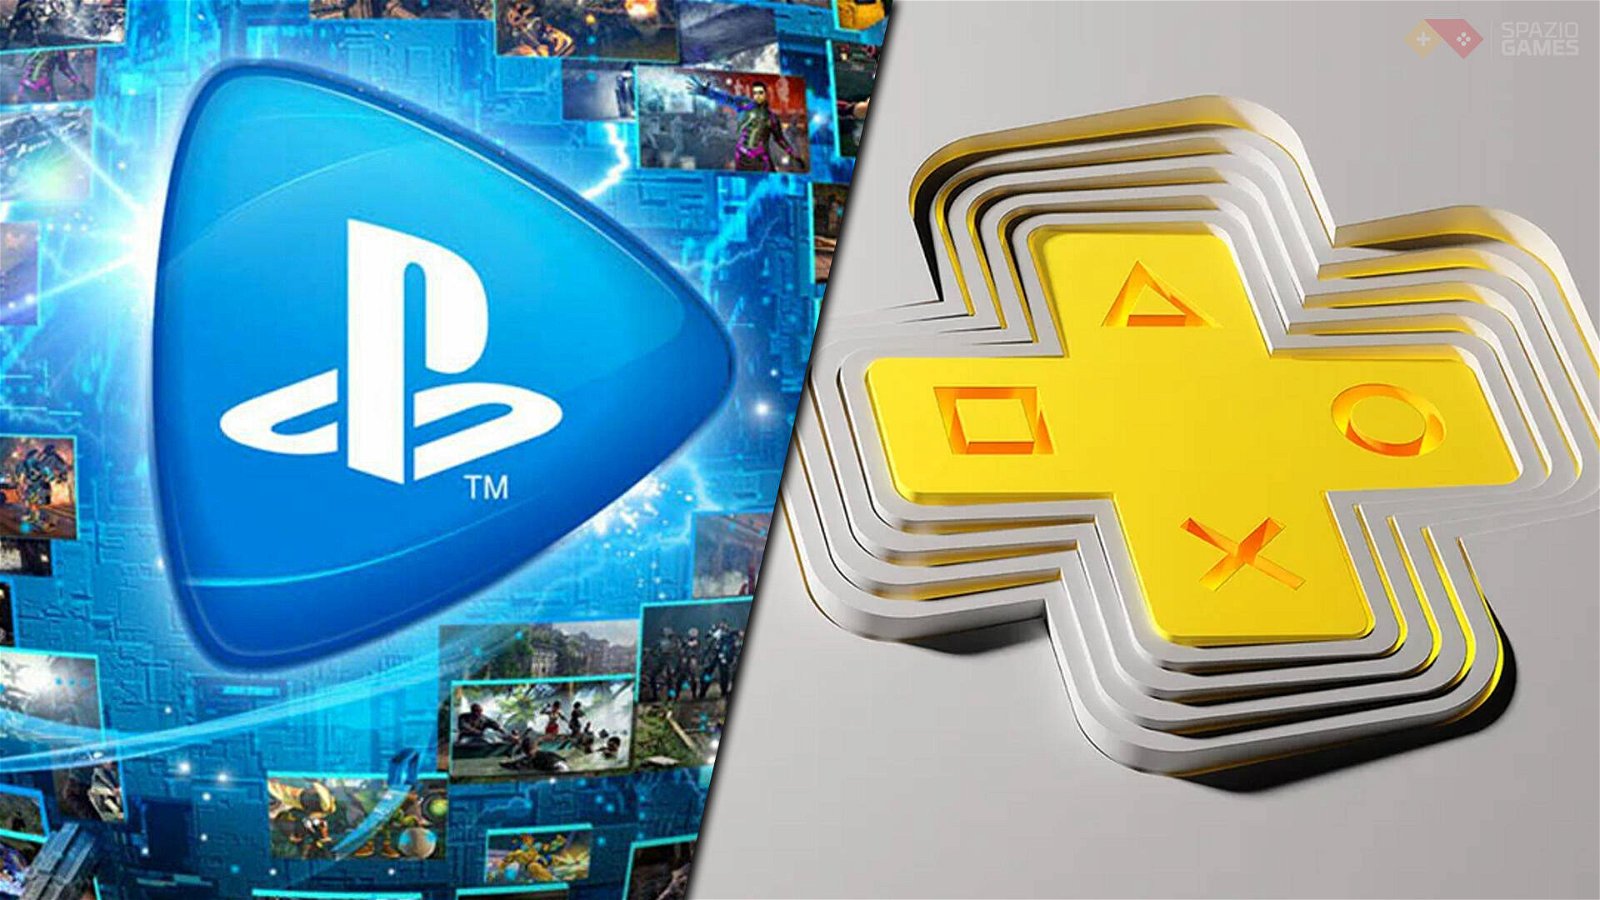 PlayStation Plus Premium è disponibile al 50% di sconto: ecco come fare -  SpazioGames